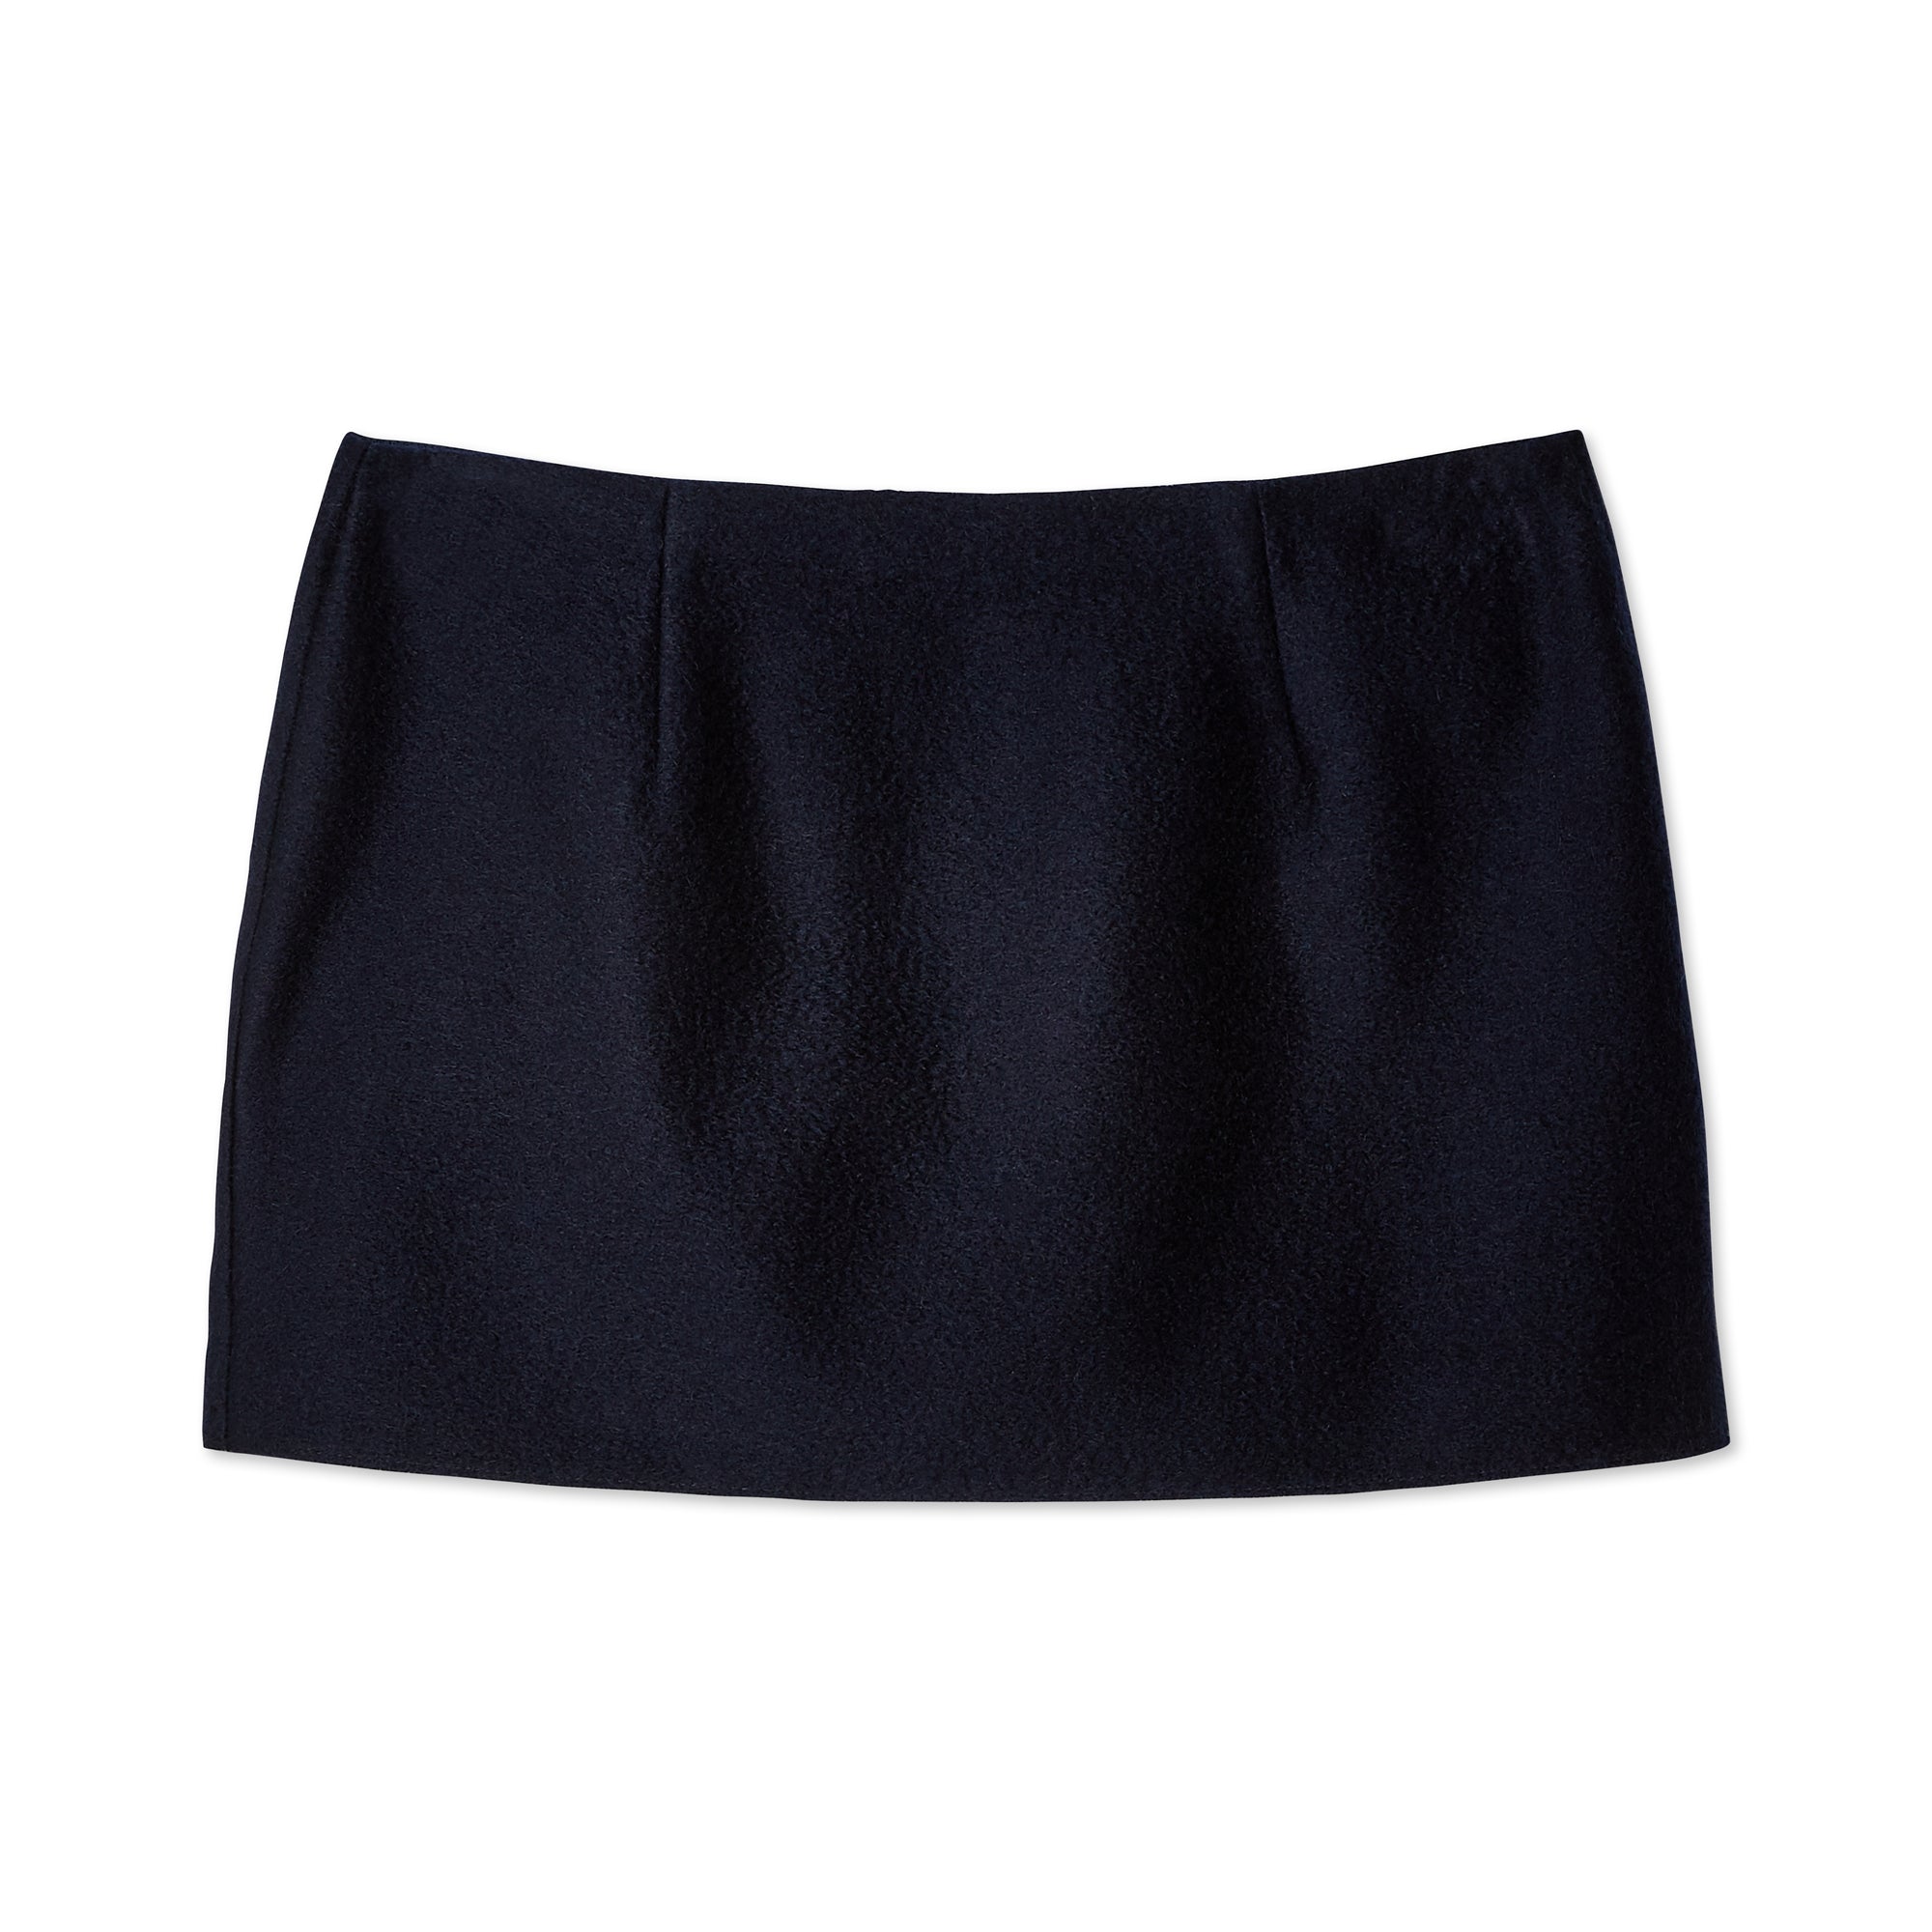 Prada - Women’s Wrap Skirt - (Navy) view 6